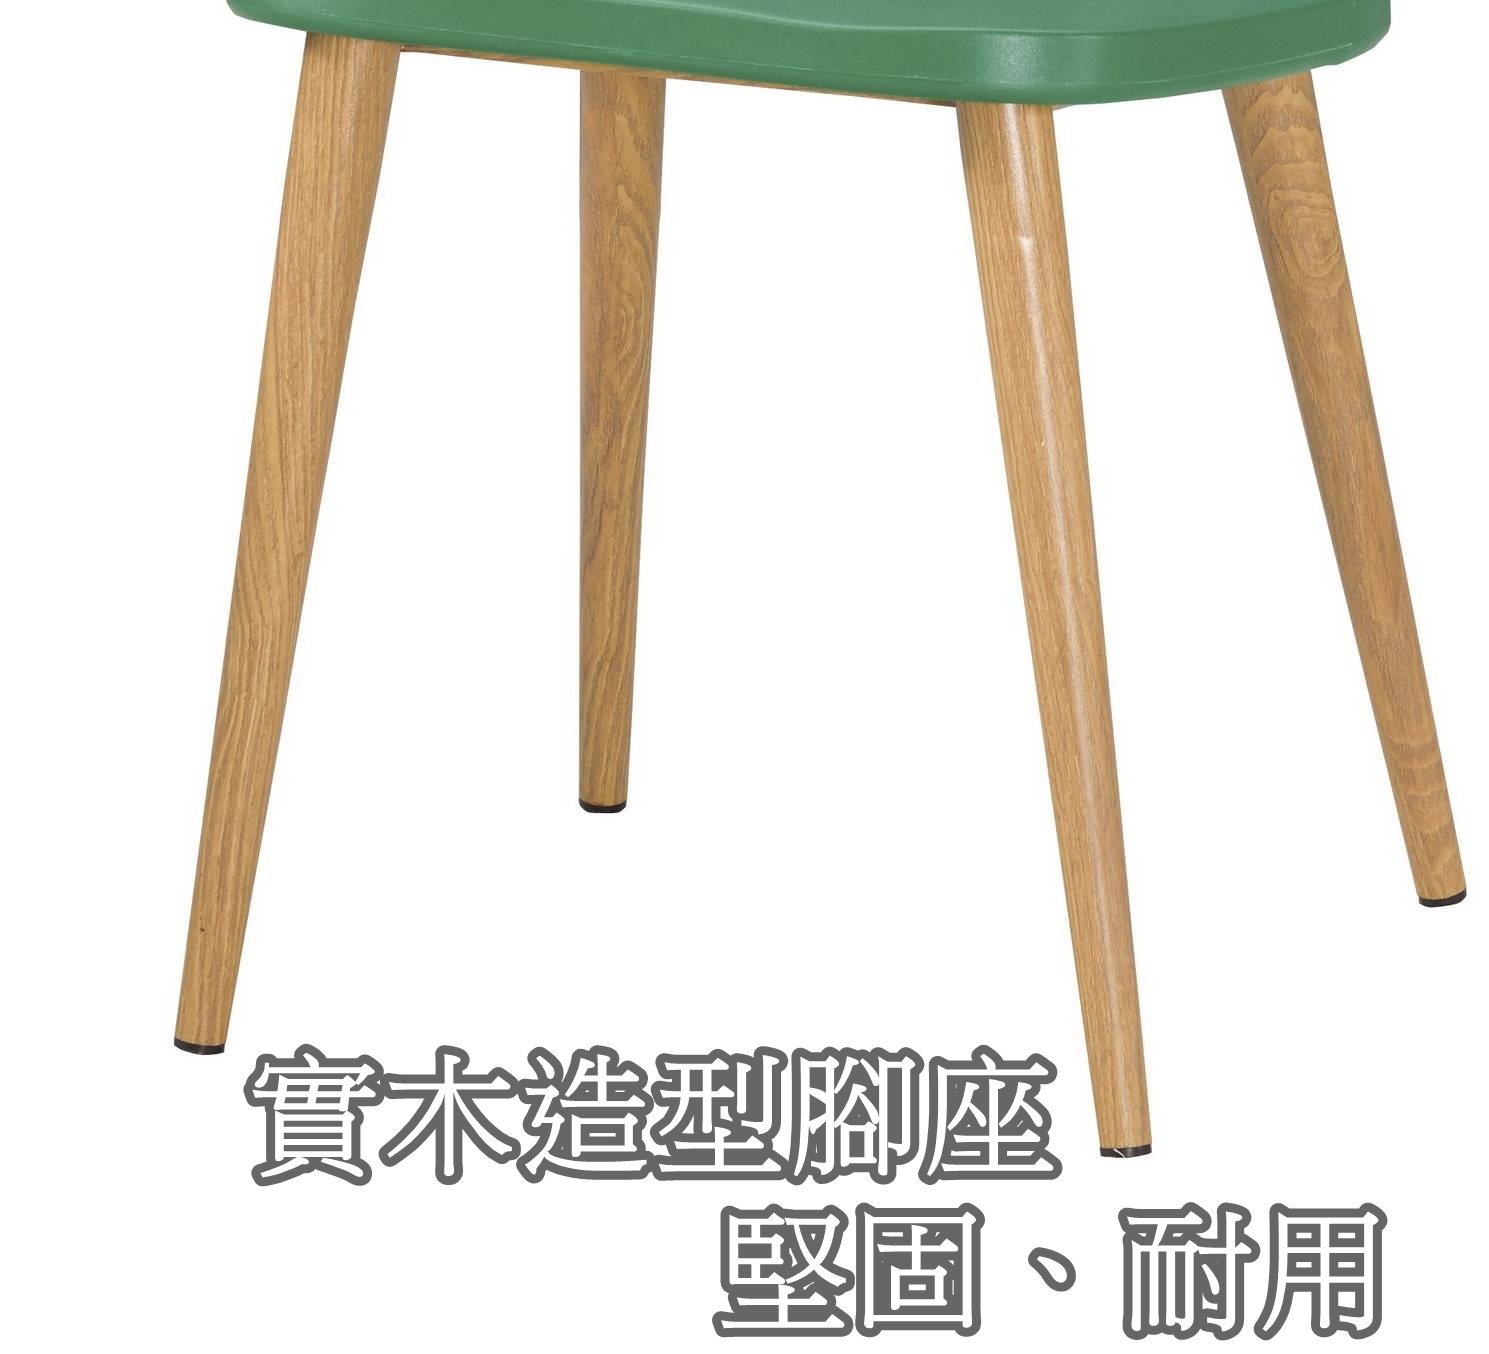 【生活家傢俱】CM-651-11：綠色造型餐椅【台中家具】椅子 塑膠椅 書桌椅 洽談椅 休閒椅 北歐風 耐衝擊PP